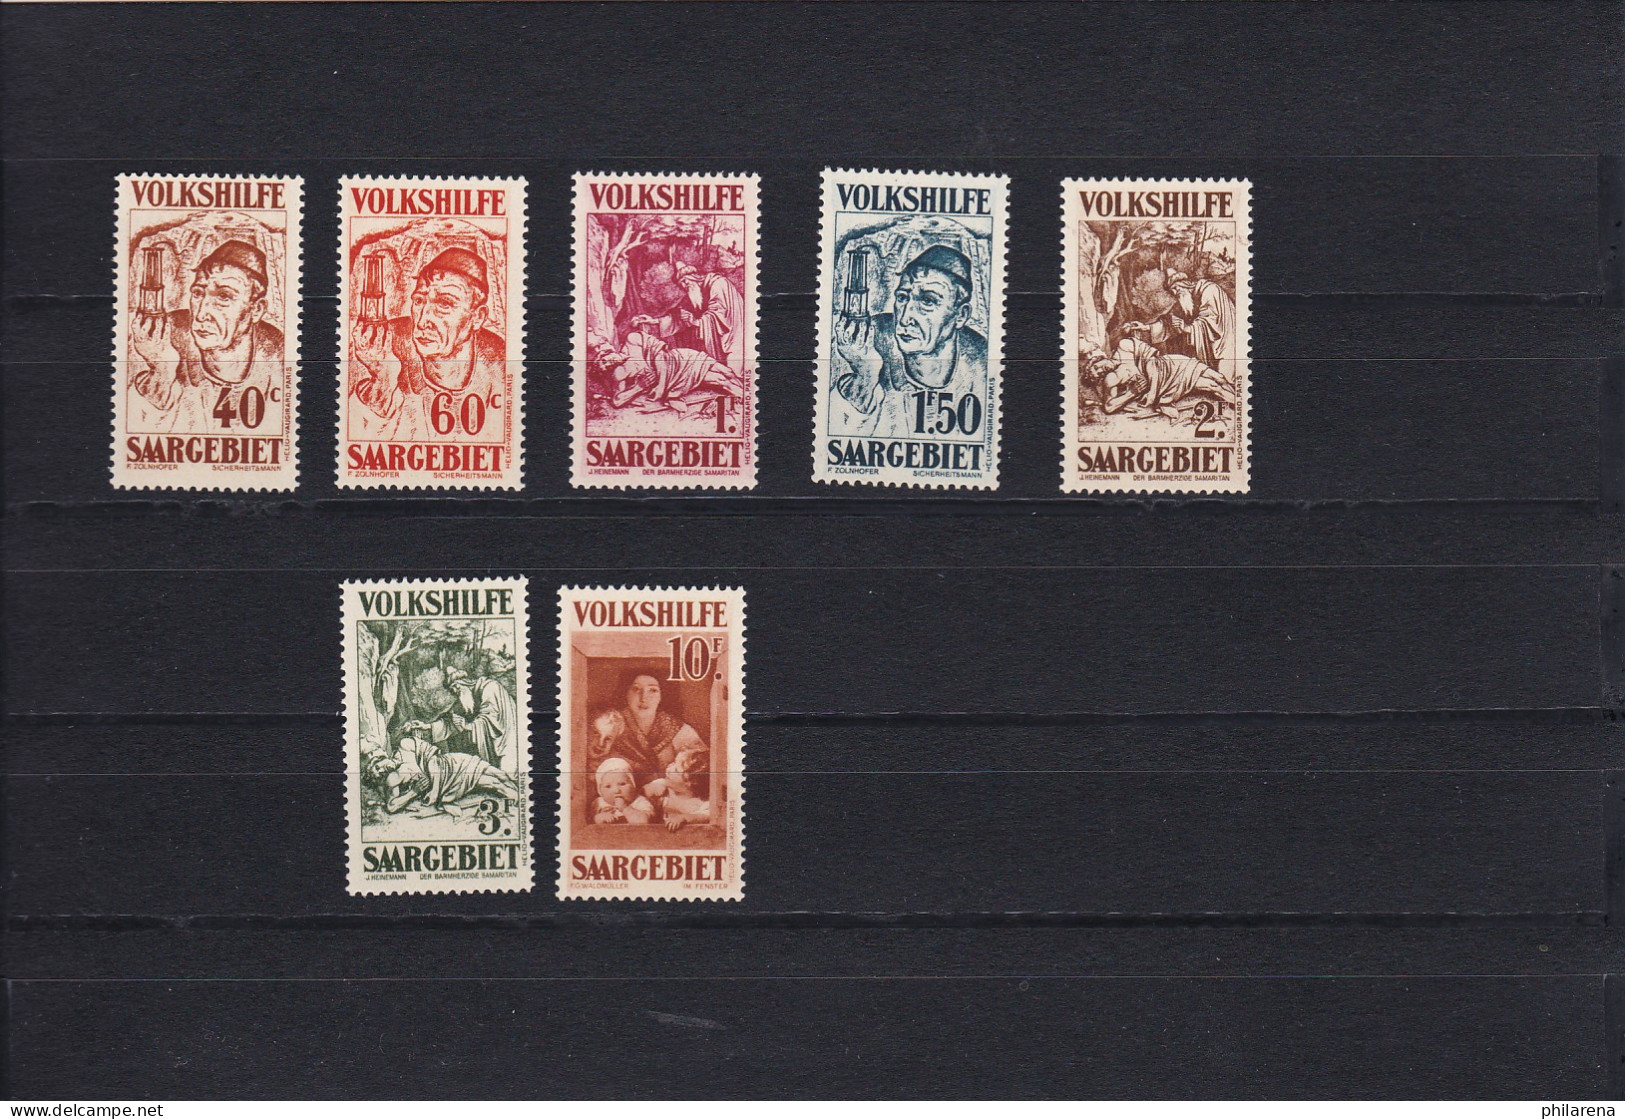 Saargebiet: MiNr. 144-150, Postfrisch, BPP Attest - Unused Stamps